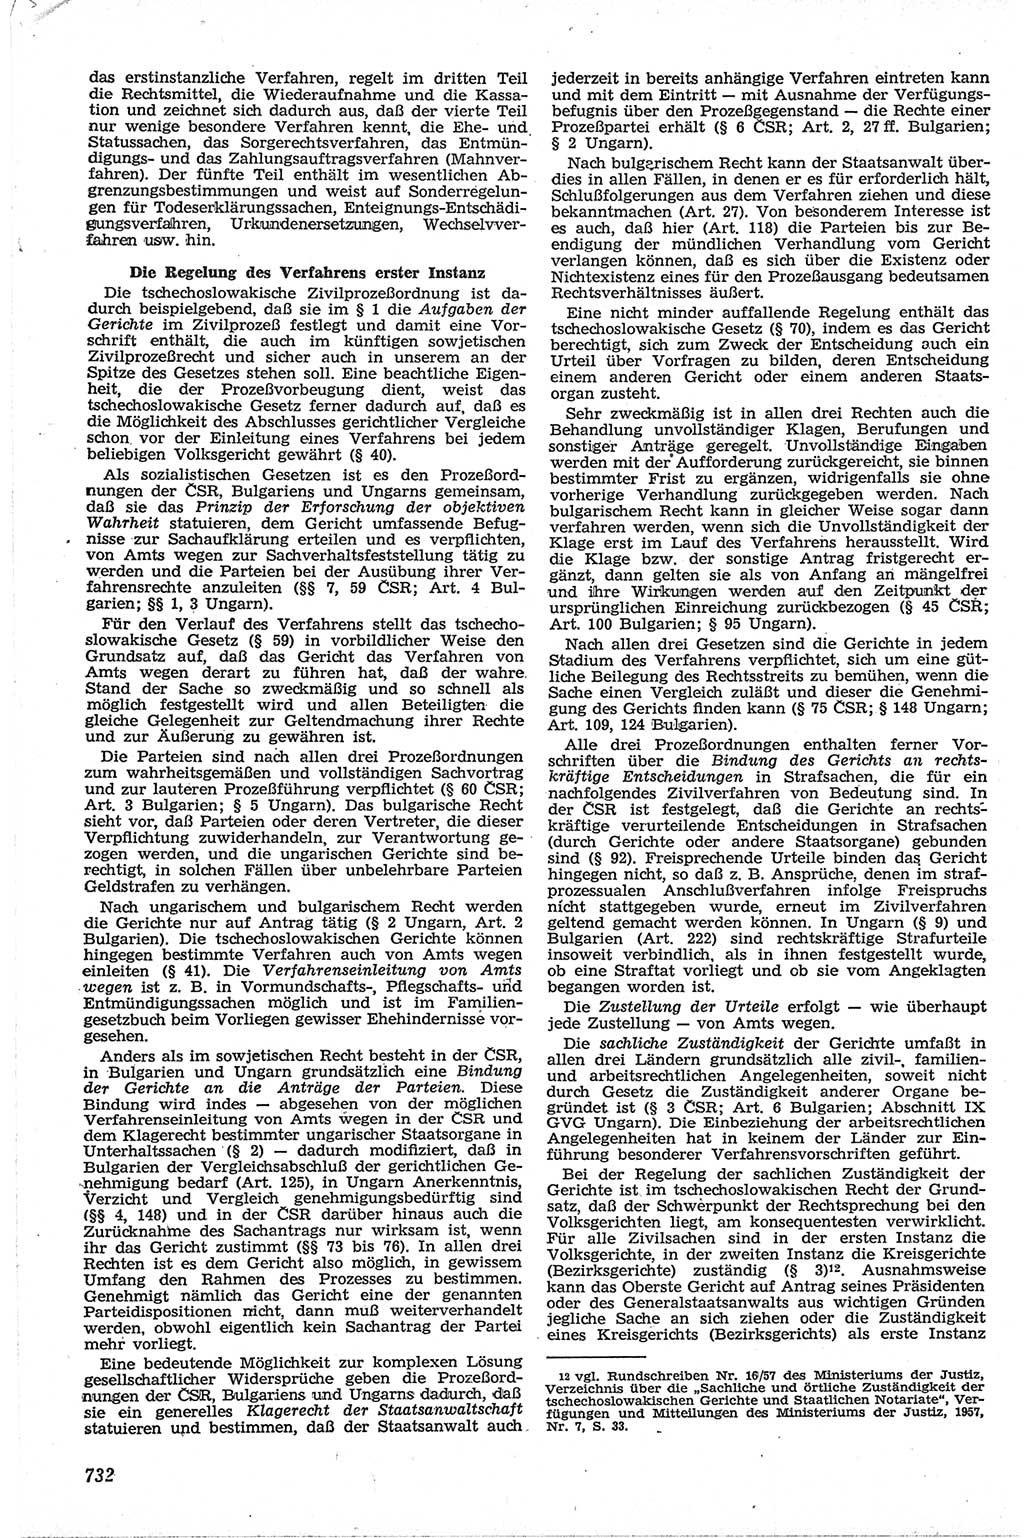 Neue Justiz (NJ), Zeitschrift für Recht und Rechtswissenschaft [Deutsche Demokratische Republik (DDR)], 13. Jahrgang 1959, Seite 732 (NJ DDR 1959, S. 732)